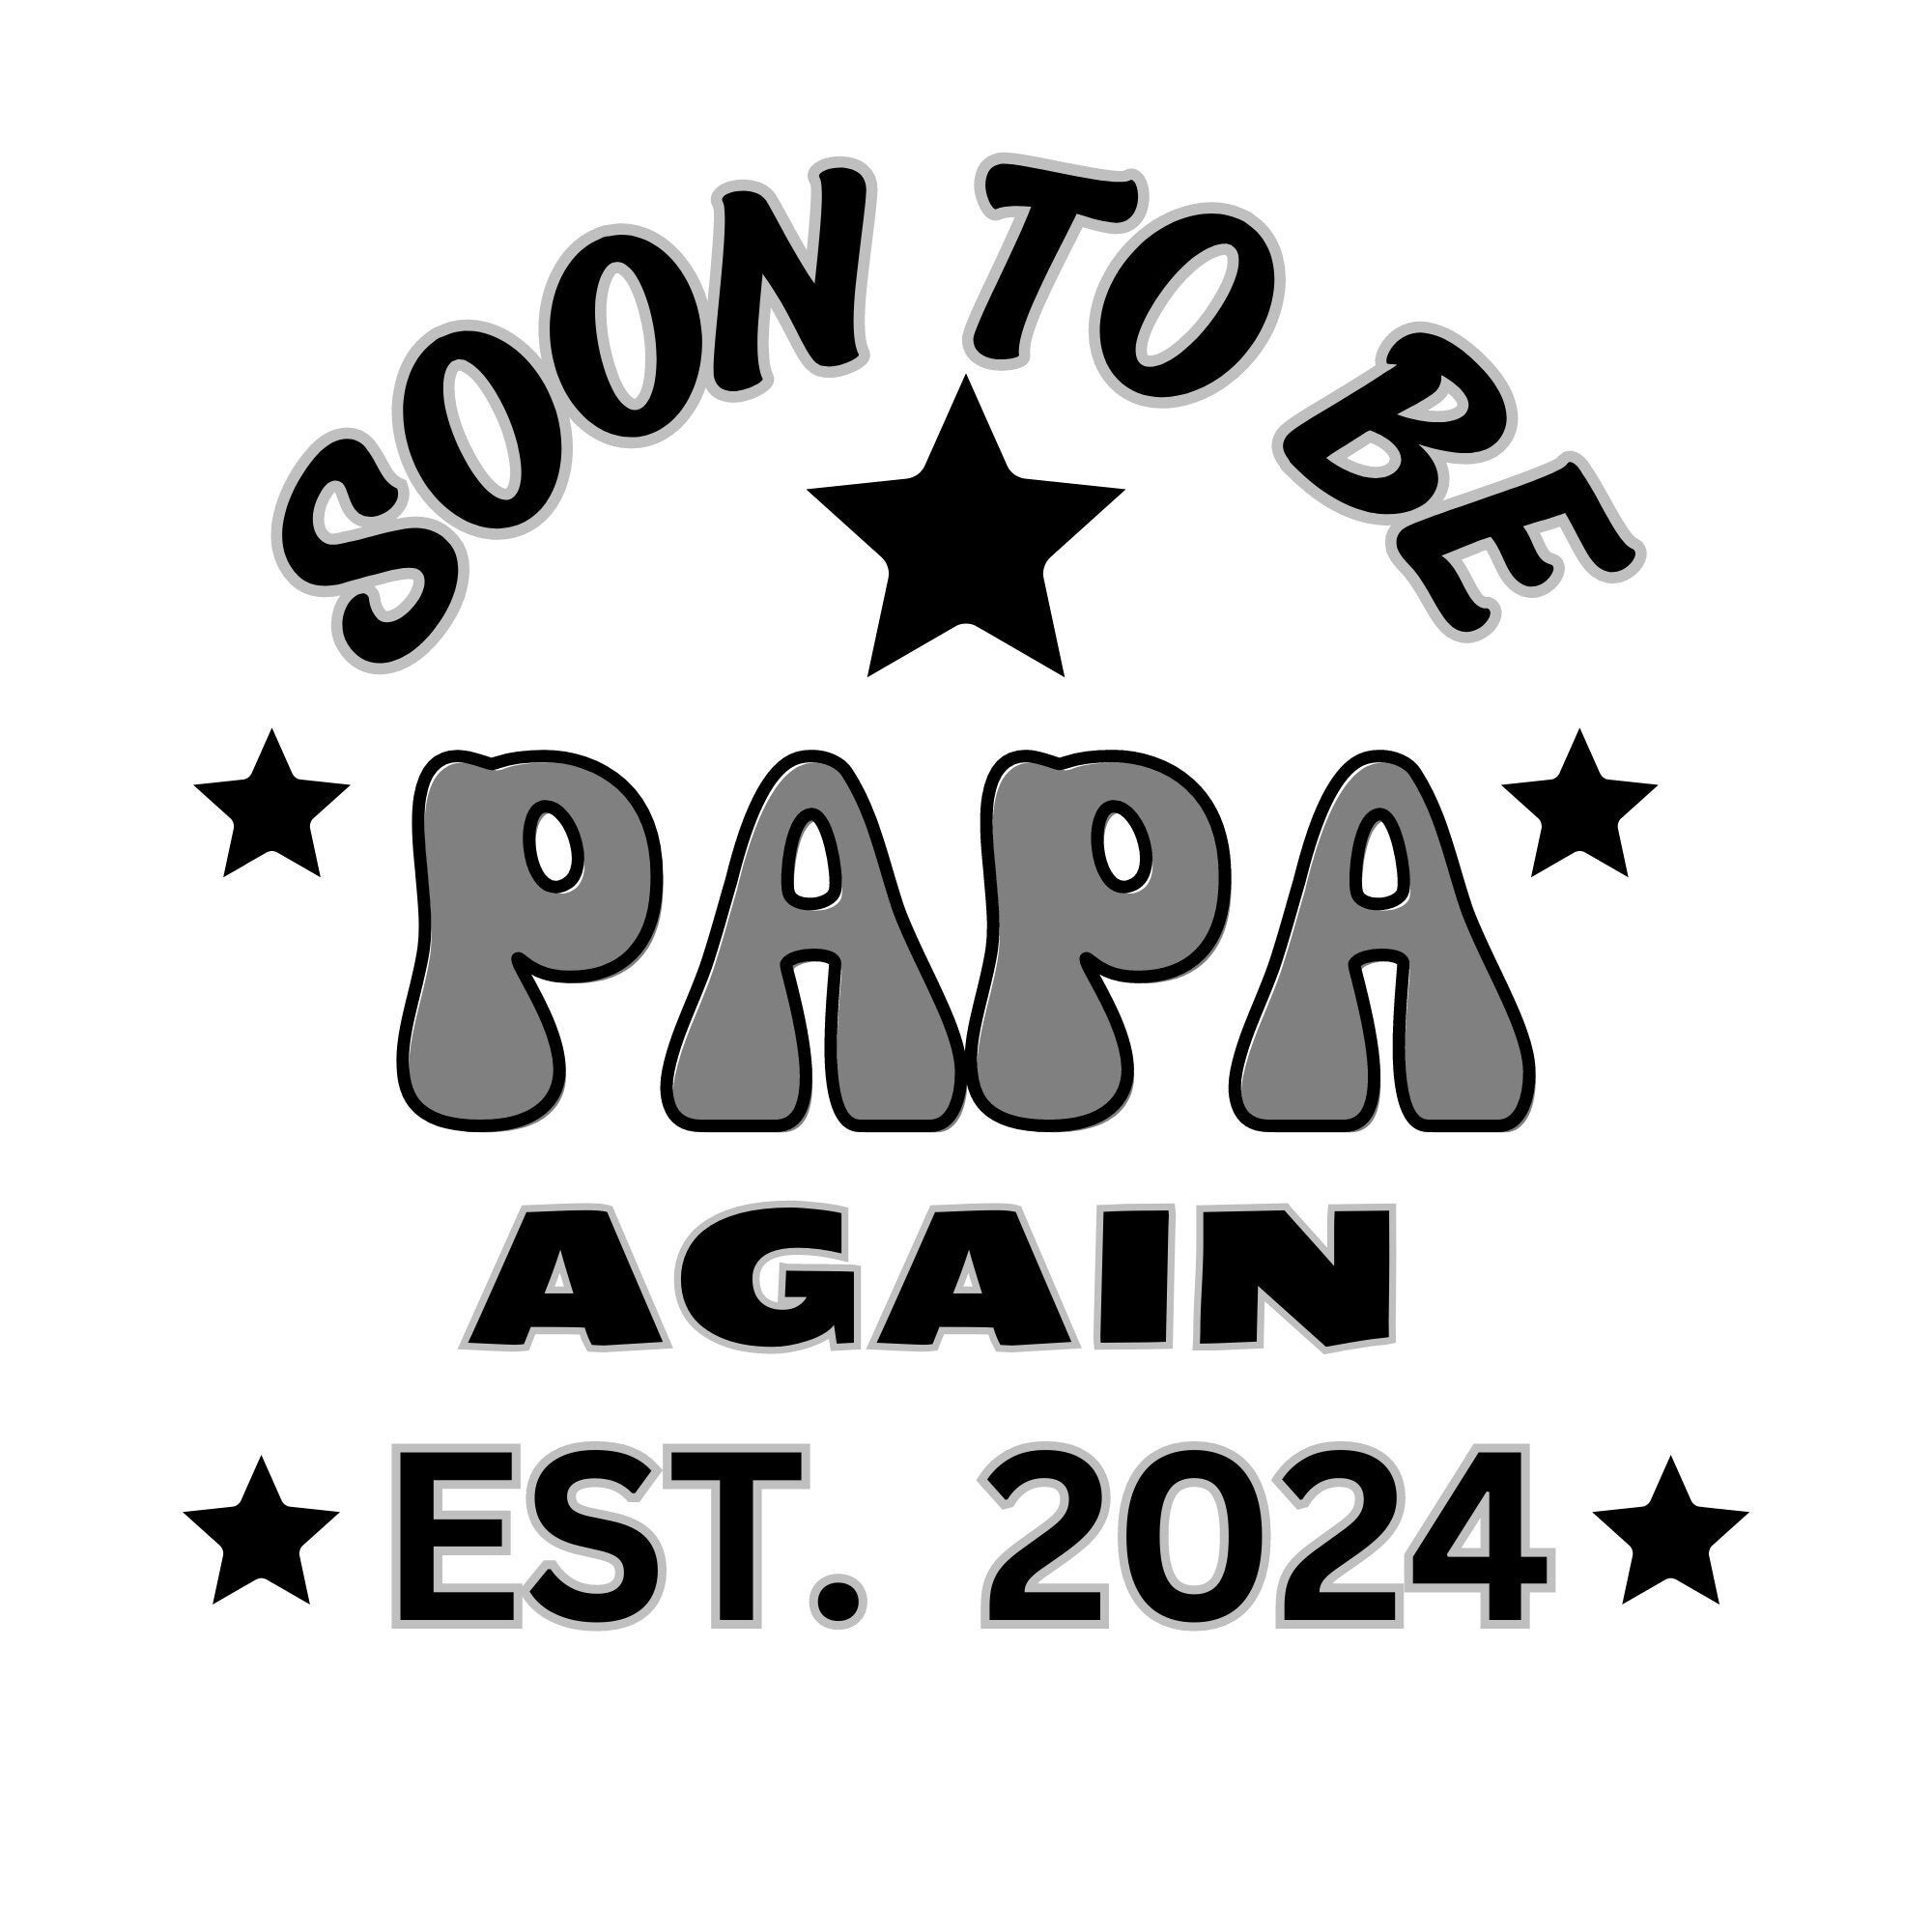 Blagues de mauvais papa Calendrier 2024 - 2025: Calendrier sur trois ans,  30 images de Blagues de mauvais papa, de janvier 2024 à juin 2026, papier